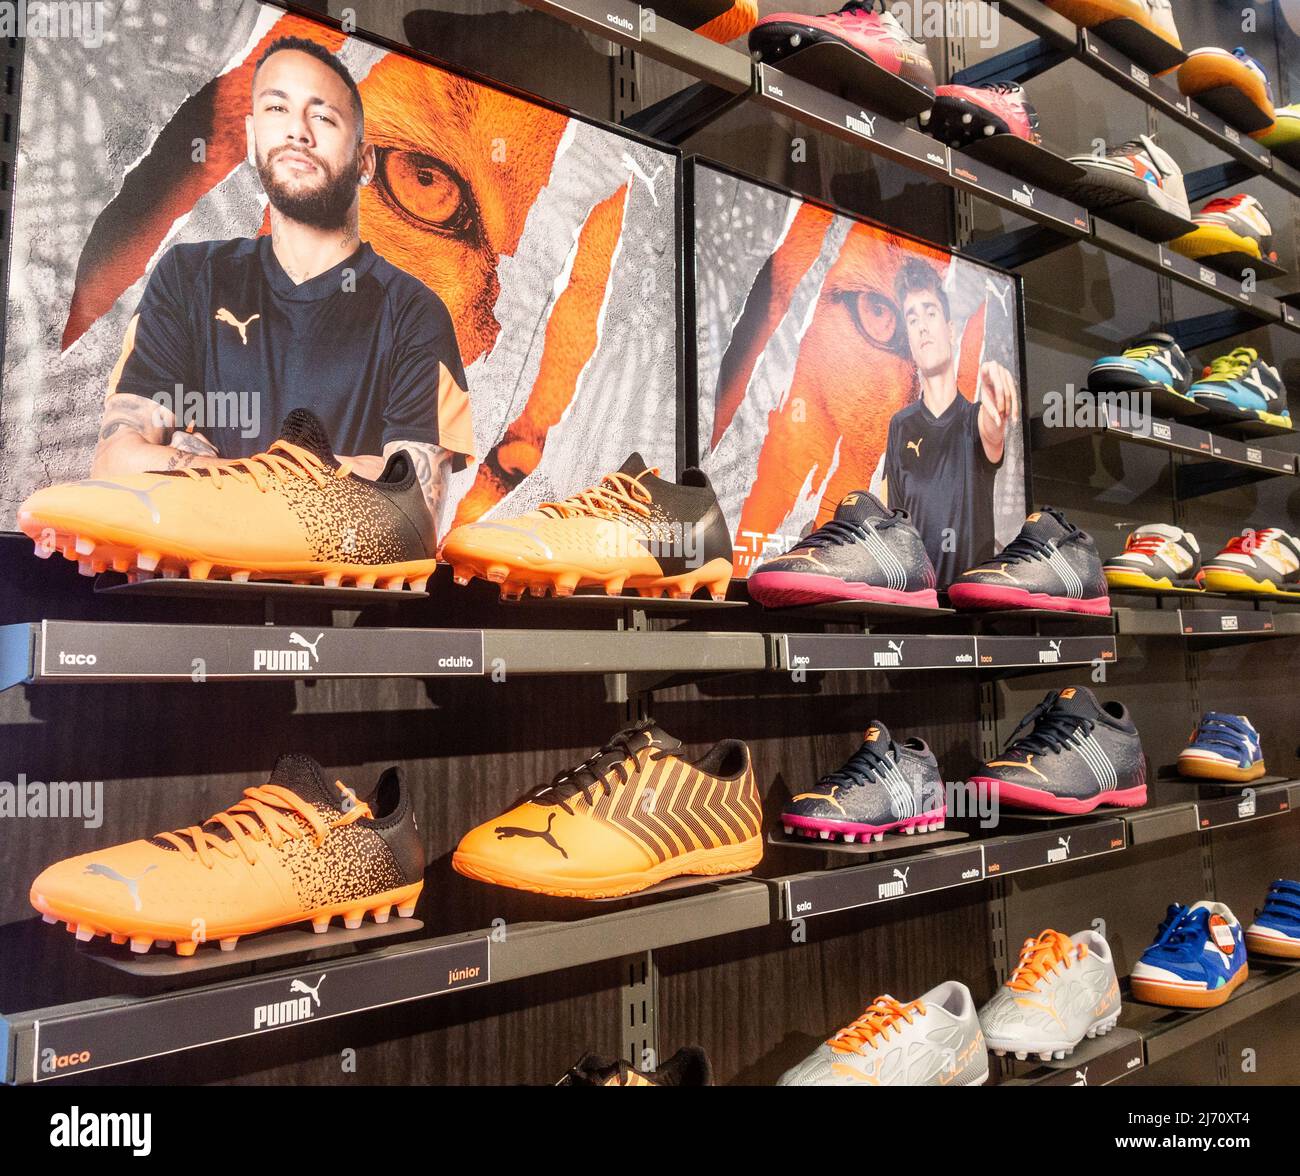 Puma Fußballschuhe Geschäft, Shop Display mit Bildern von gesponserten  Fußballer, Neymar und Antoine Griezmann Stockfotografie - Alamy